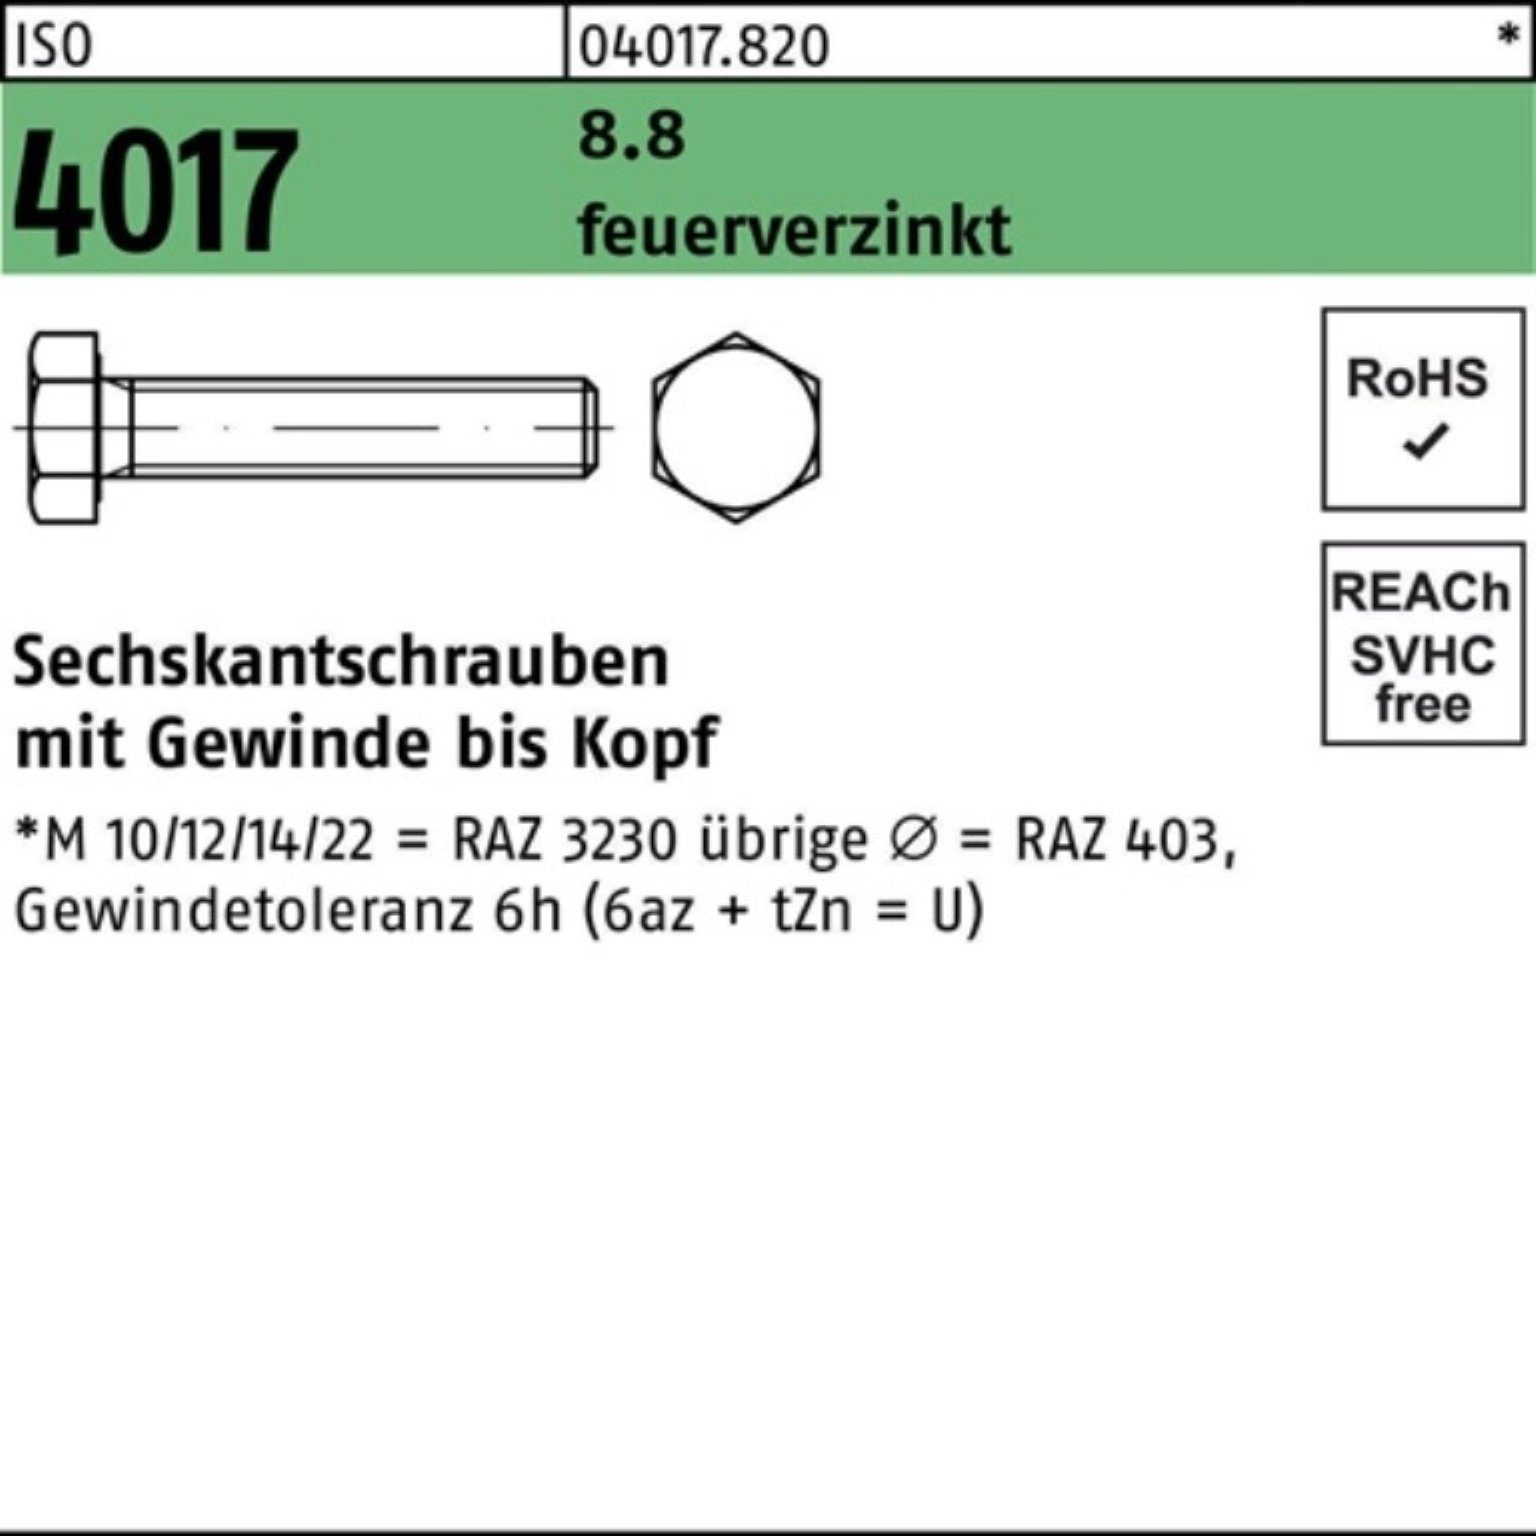 Bufab Sechskantschraube 100er Pack Sechskantschraube St 4017 ISO 260 feuerverz. 1 VG M16x 8.8